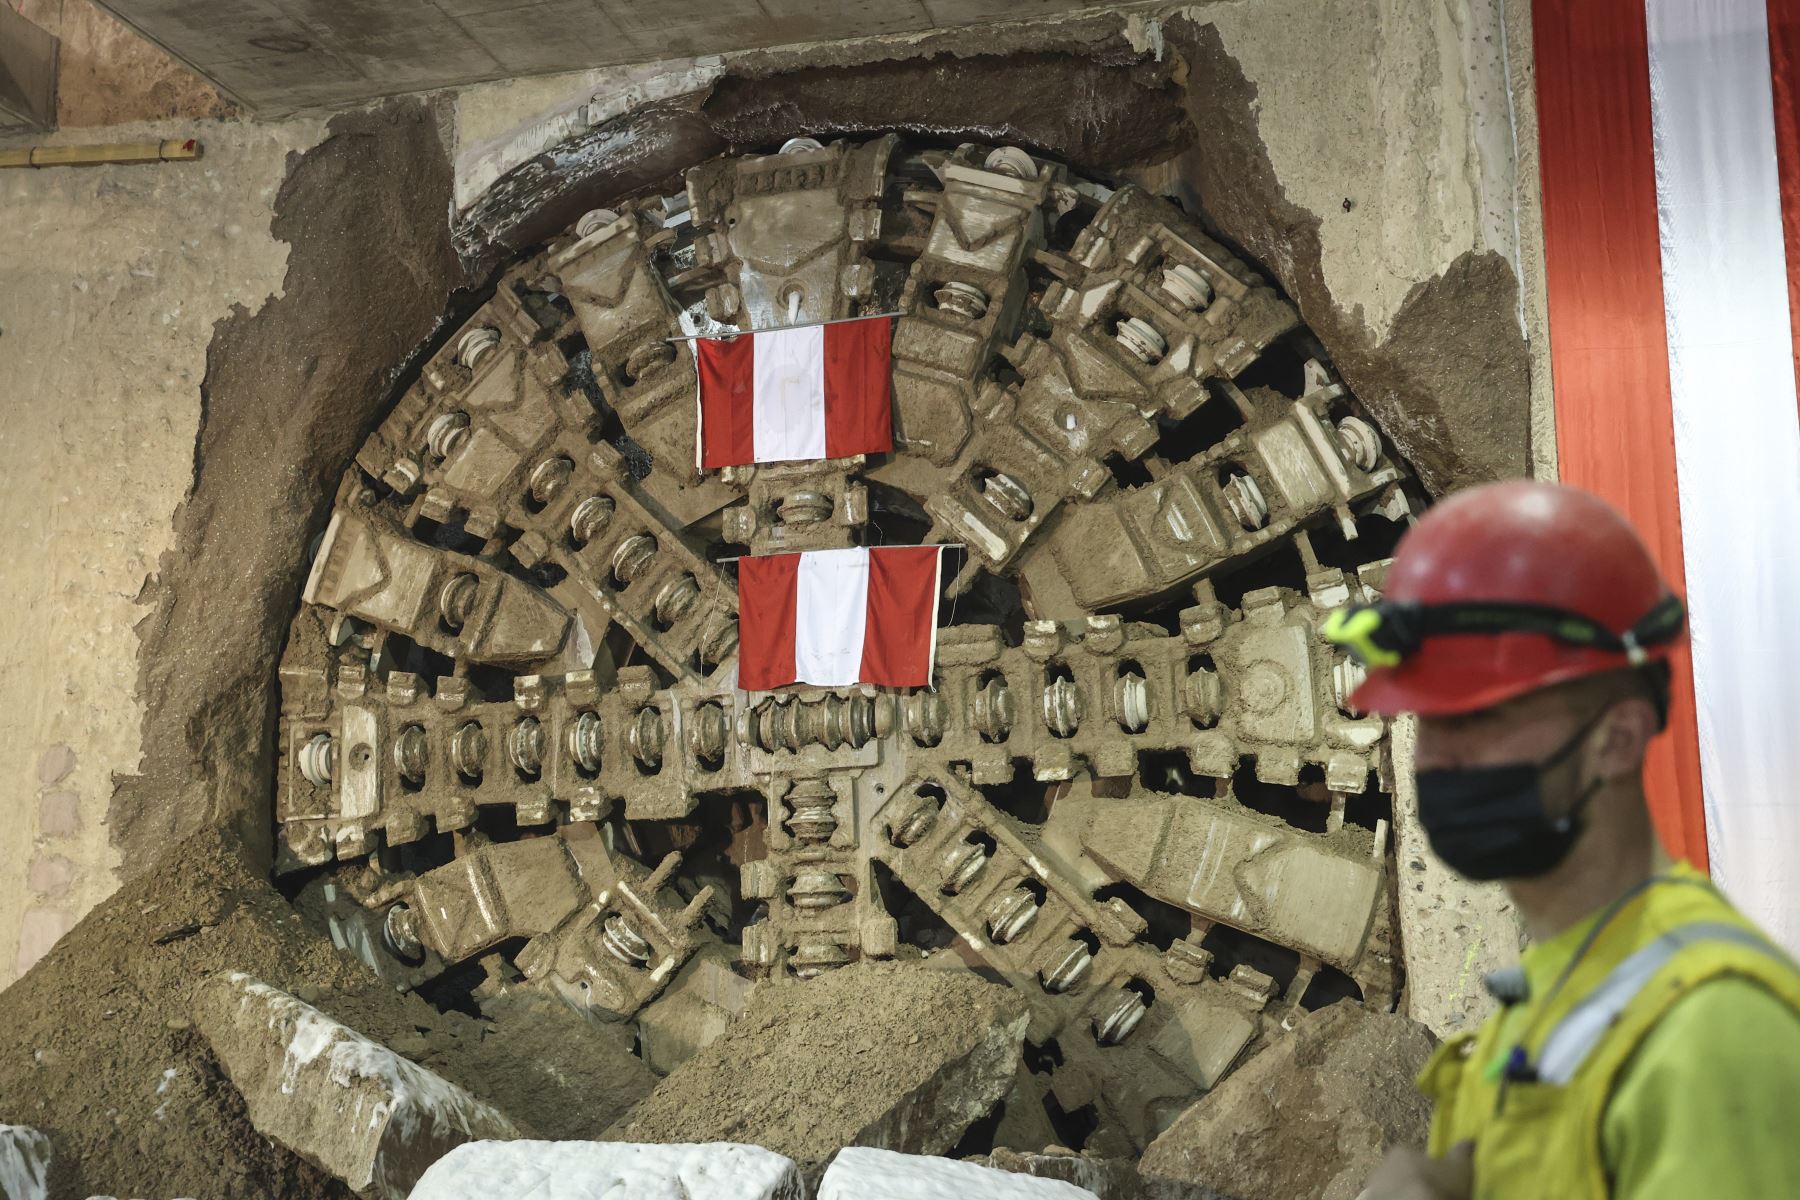 La tuneladora tiene una longitud de 120 metros y su rueda de corte mide 10.27 metros de diámetro. Foto: ANDINA/Jhonel Rodríguez Robles